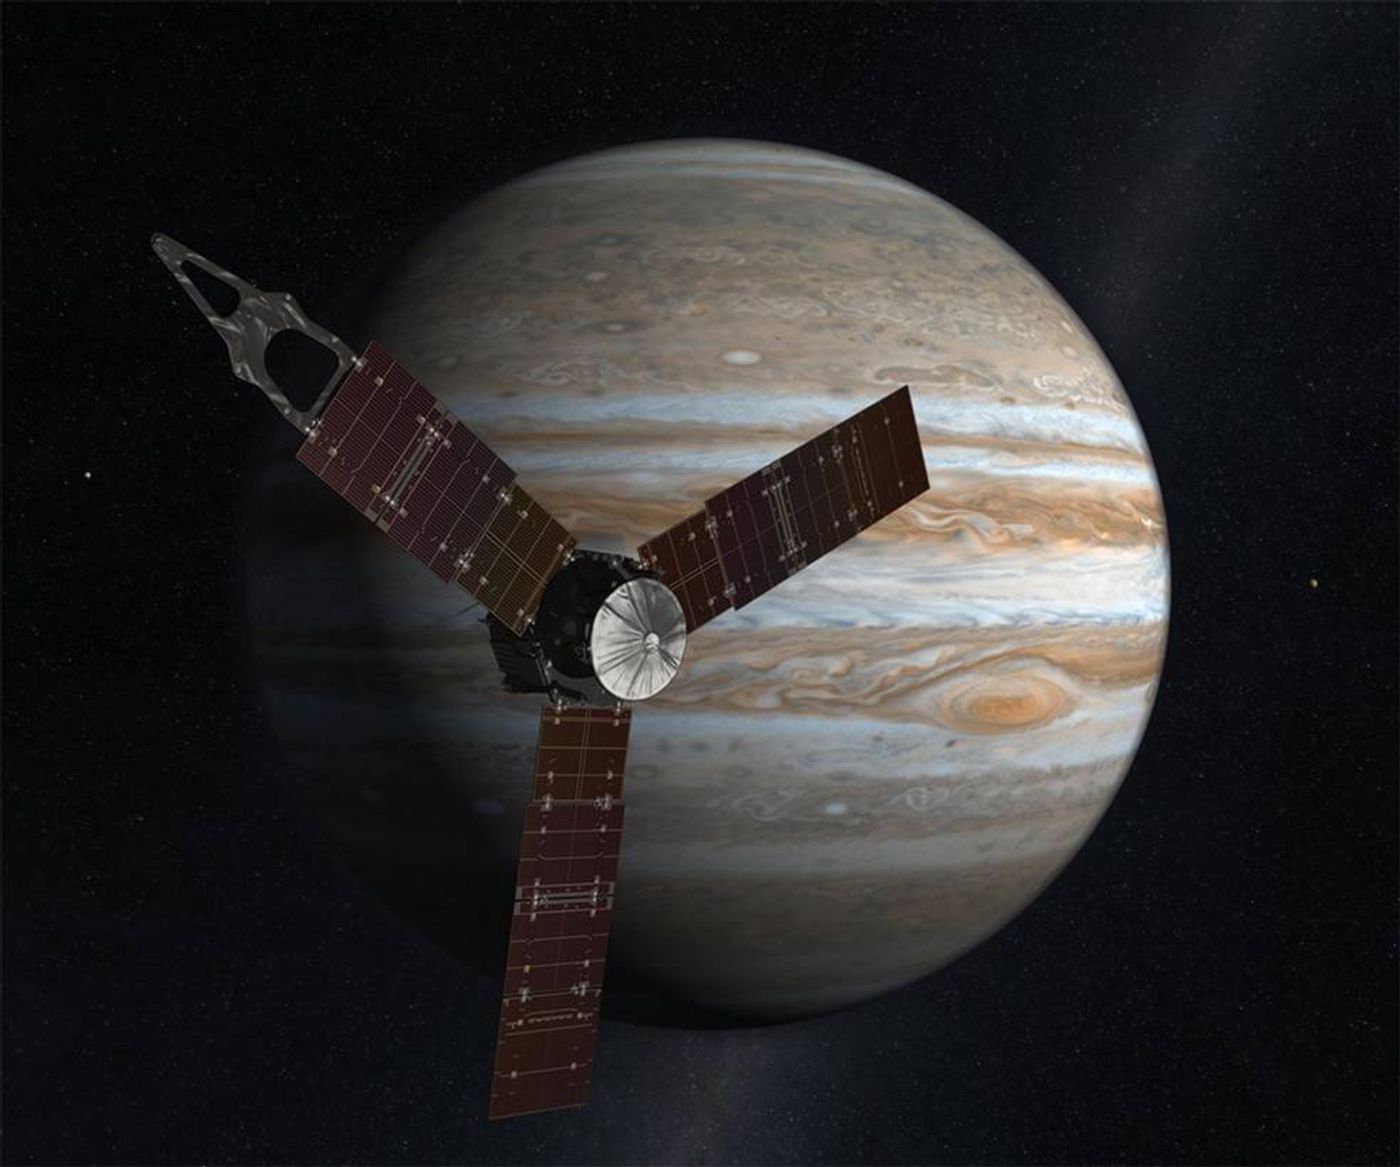 An artist's impression of Juno circling Jupiter.